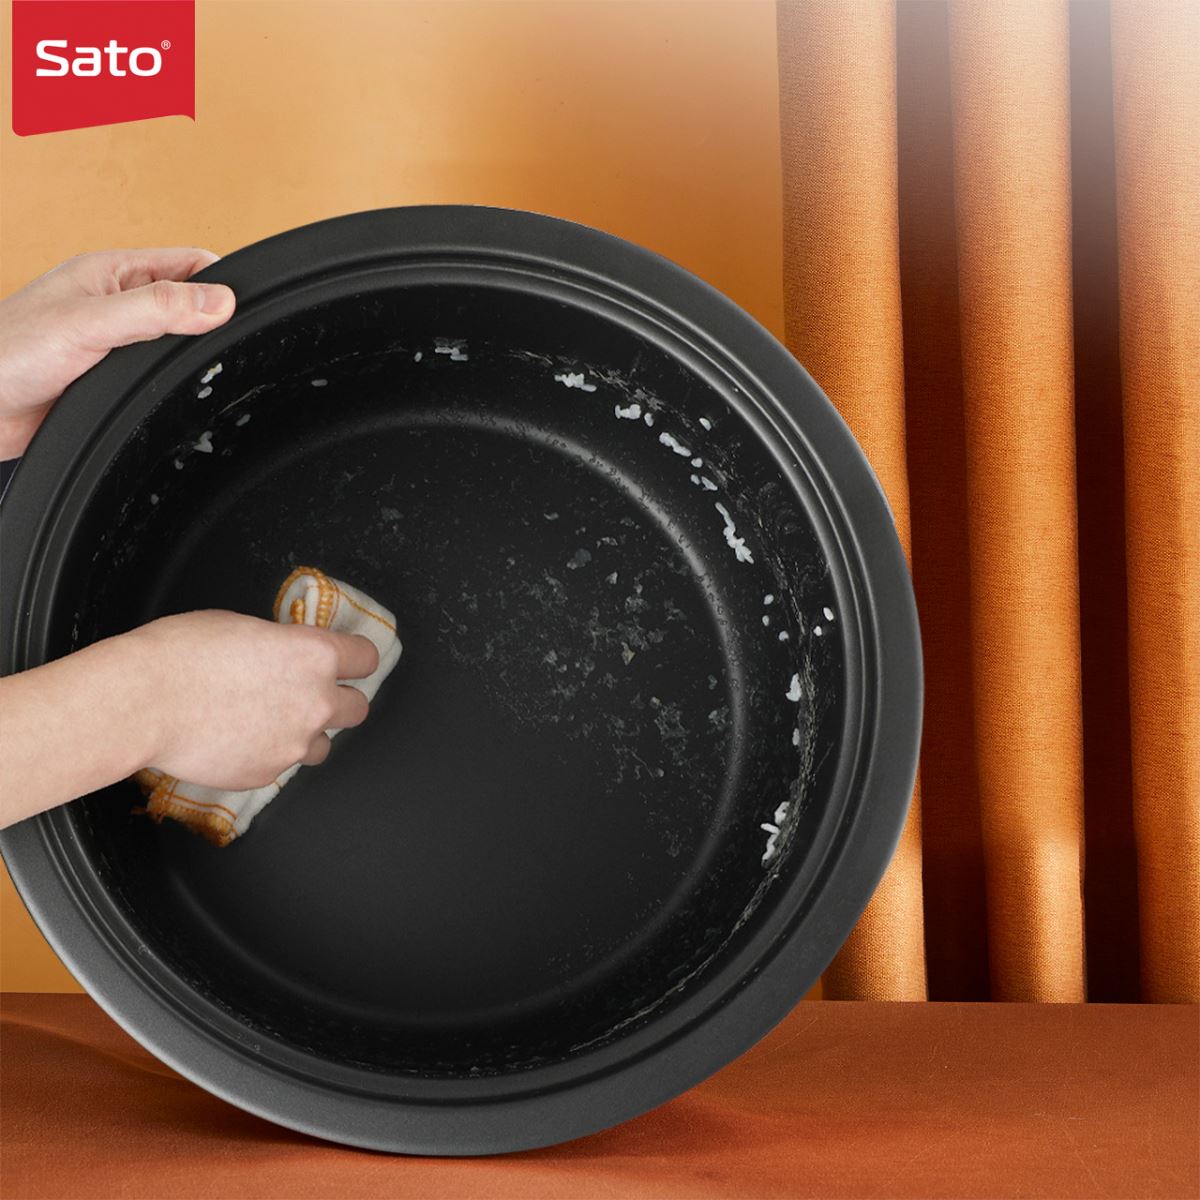 Mẹo vệ sinh và sử dụng nồi cơm điện công nghiệp Sato như mới và bền lâu